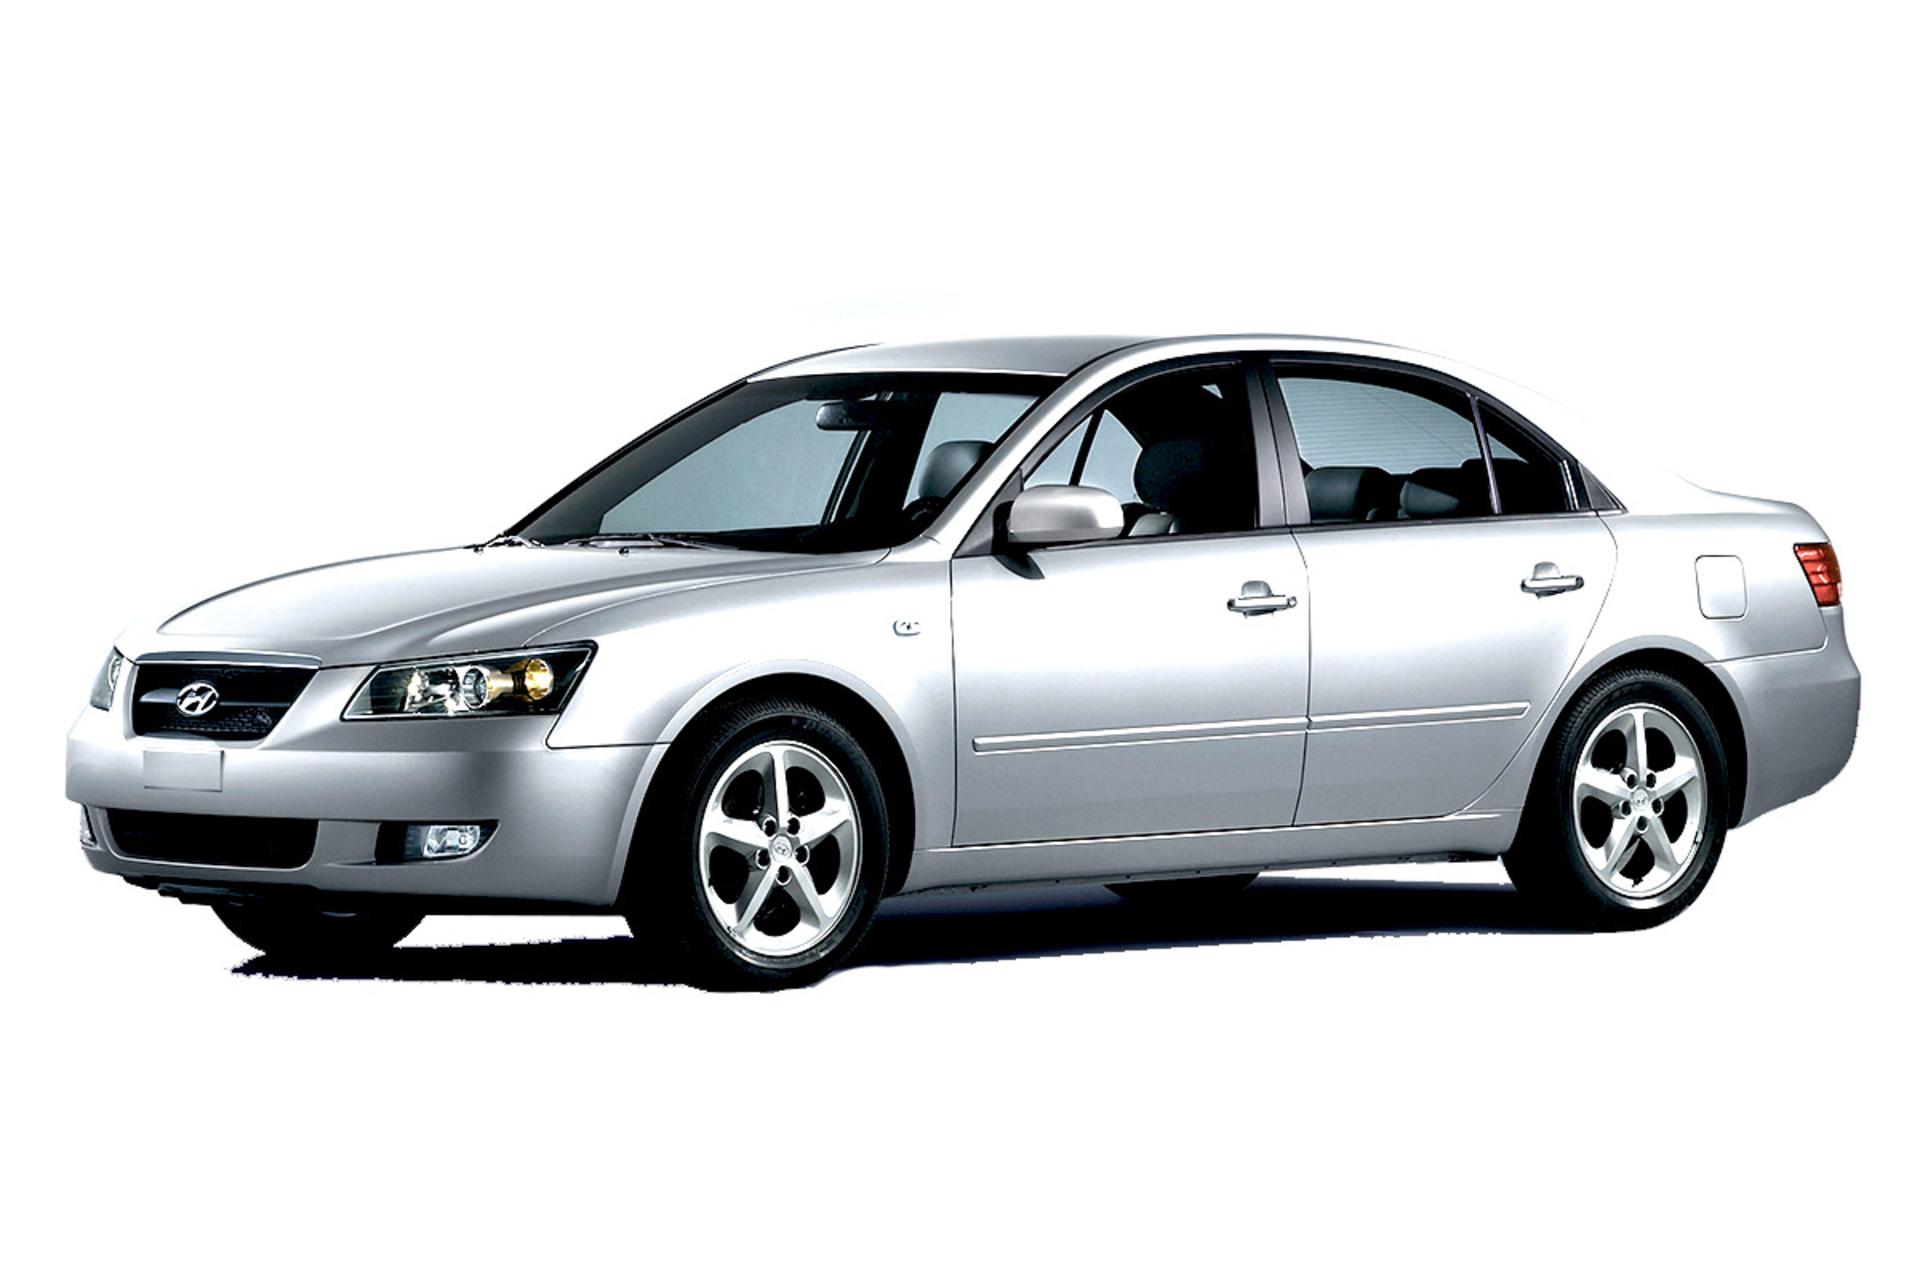 مرجع متخصصين ايران خودرو هيونداي سوناتا ۲۰۰۴ / Hyundai Sonata 2004 نماي جلو ۰۱